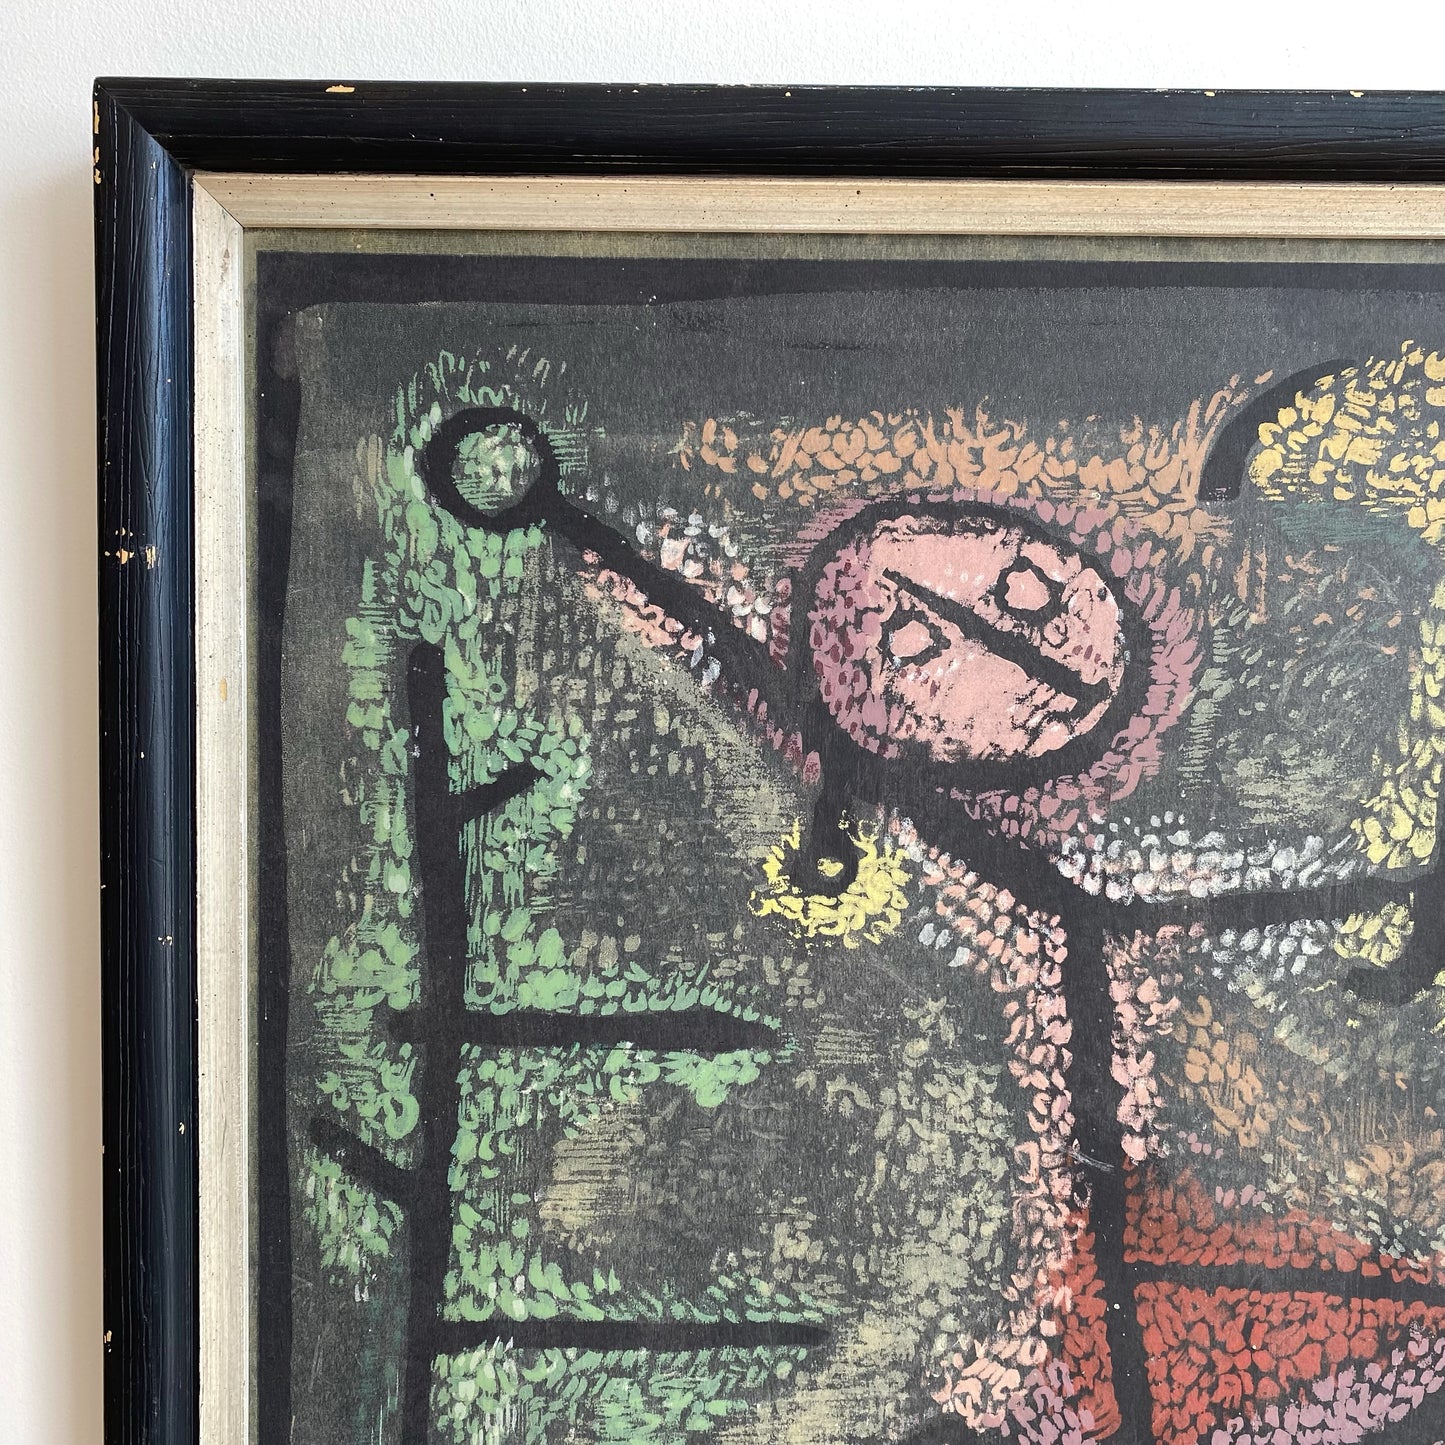 Vintage “Dancing Girl” Framed Art Print by Paul Klee